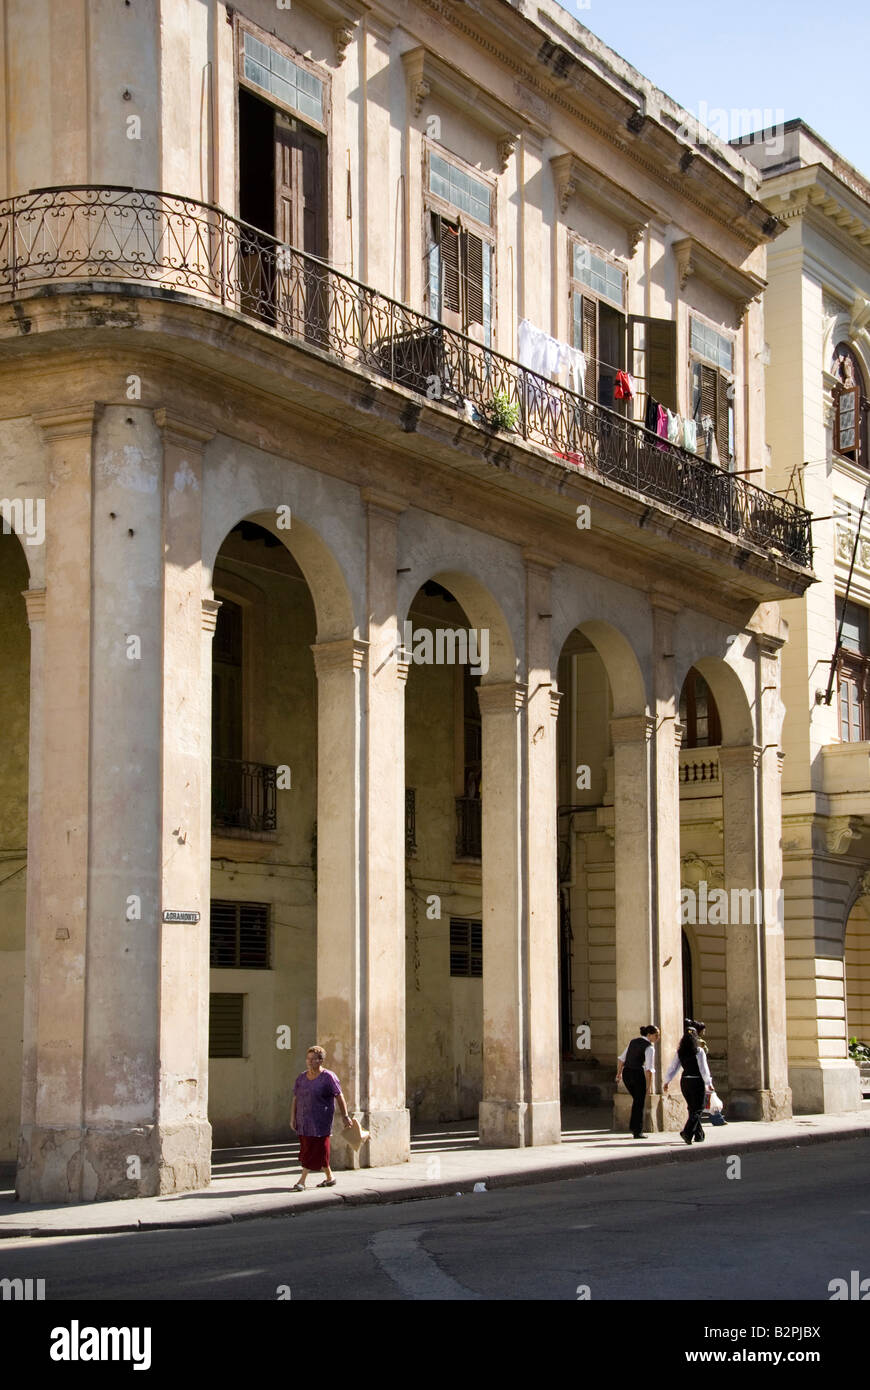 Scena di strada con la vecchia architettura coloniale a La Habana Vieja La Habana Cuba Foto Stock